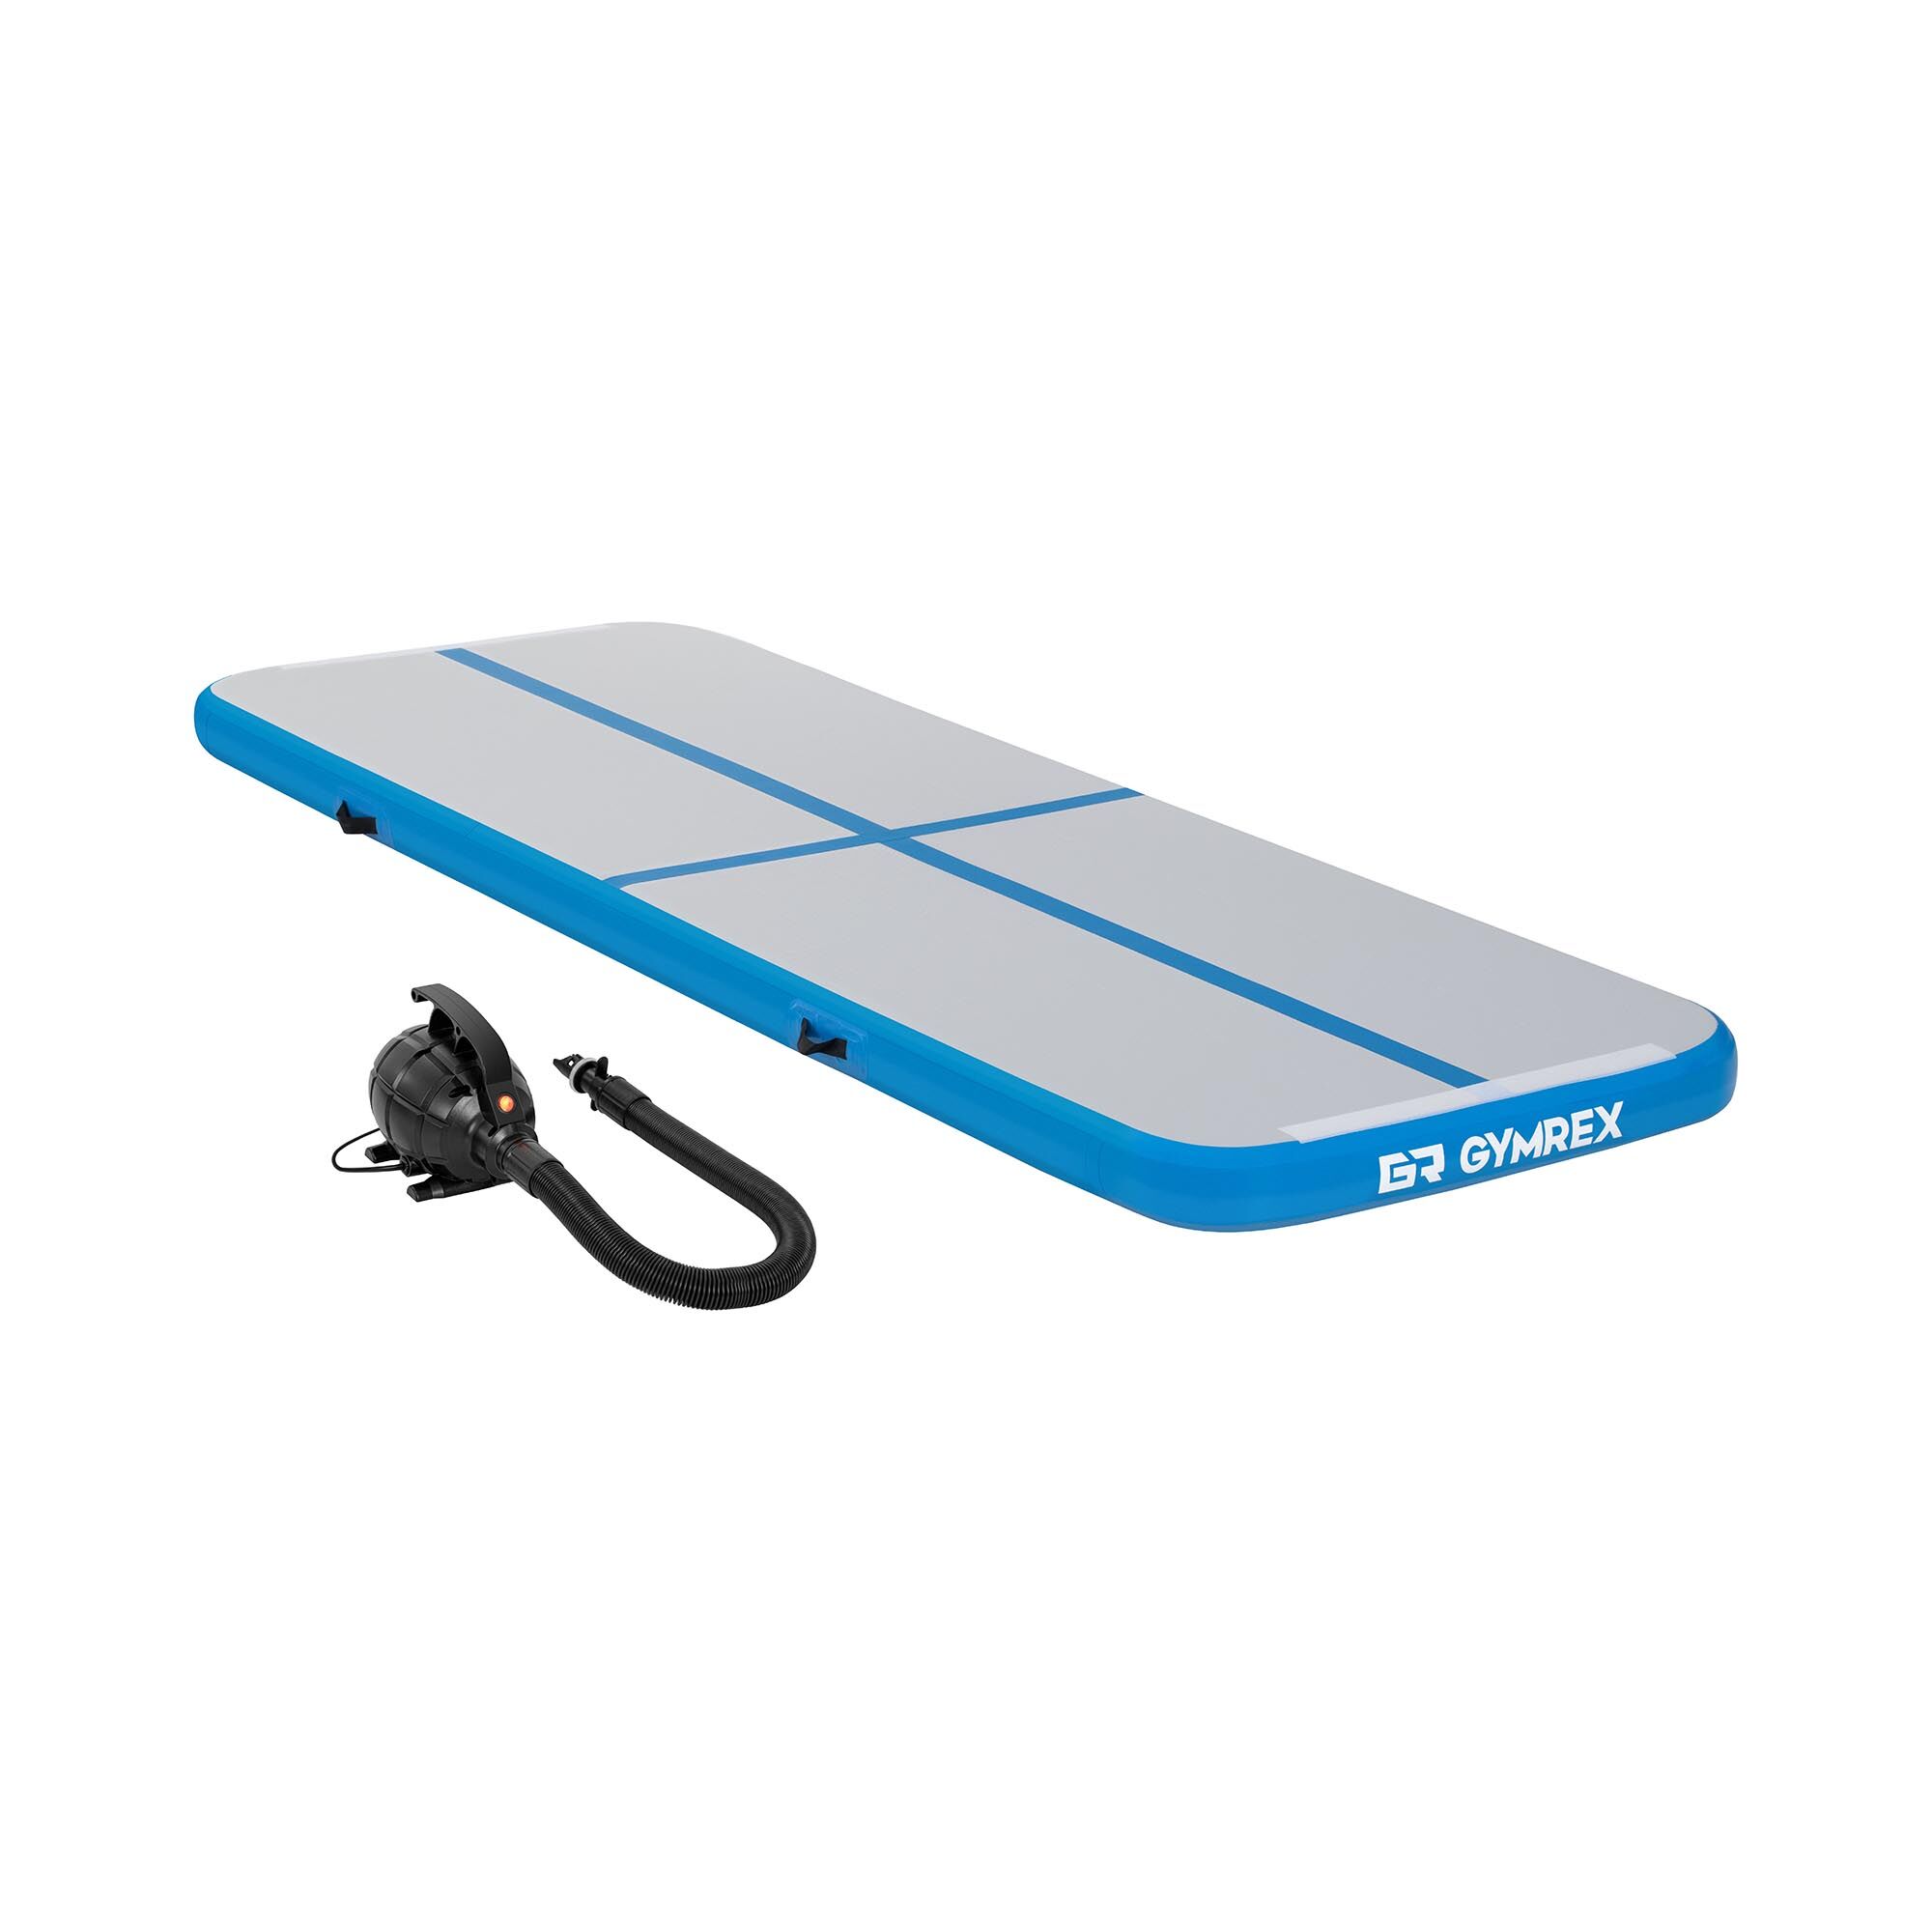 Gymrex Set: Opblaasbare gymmat met elektrische luchtpomp - 300 x 100 x 10 cm - 150 kg - blauw / grijs GR-ATM1-SET